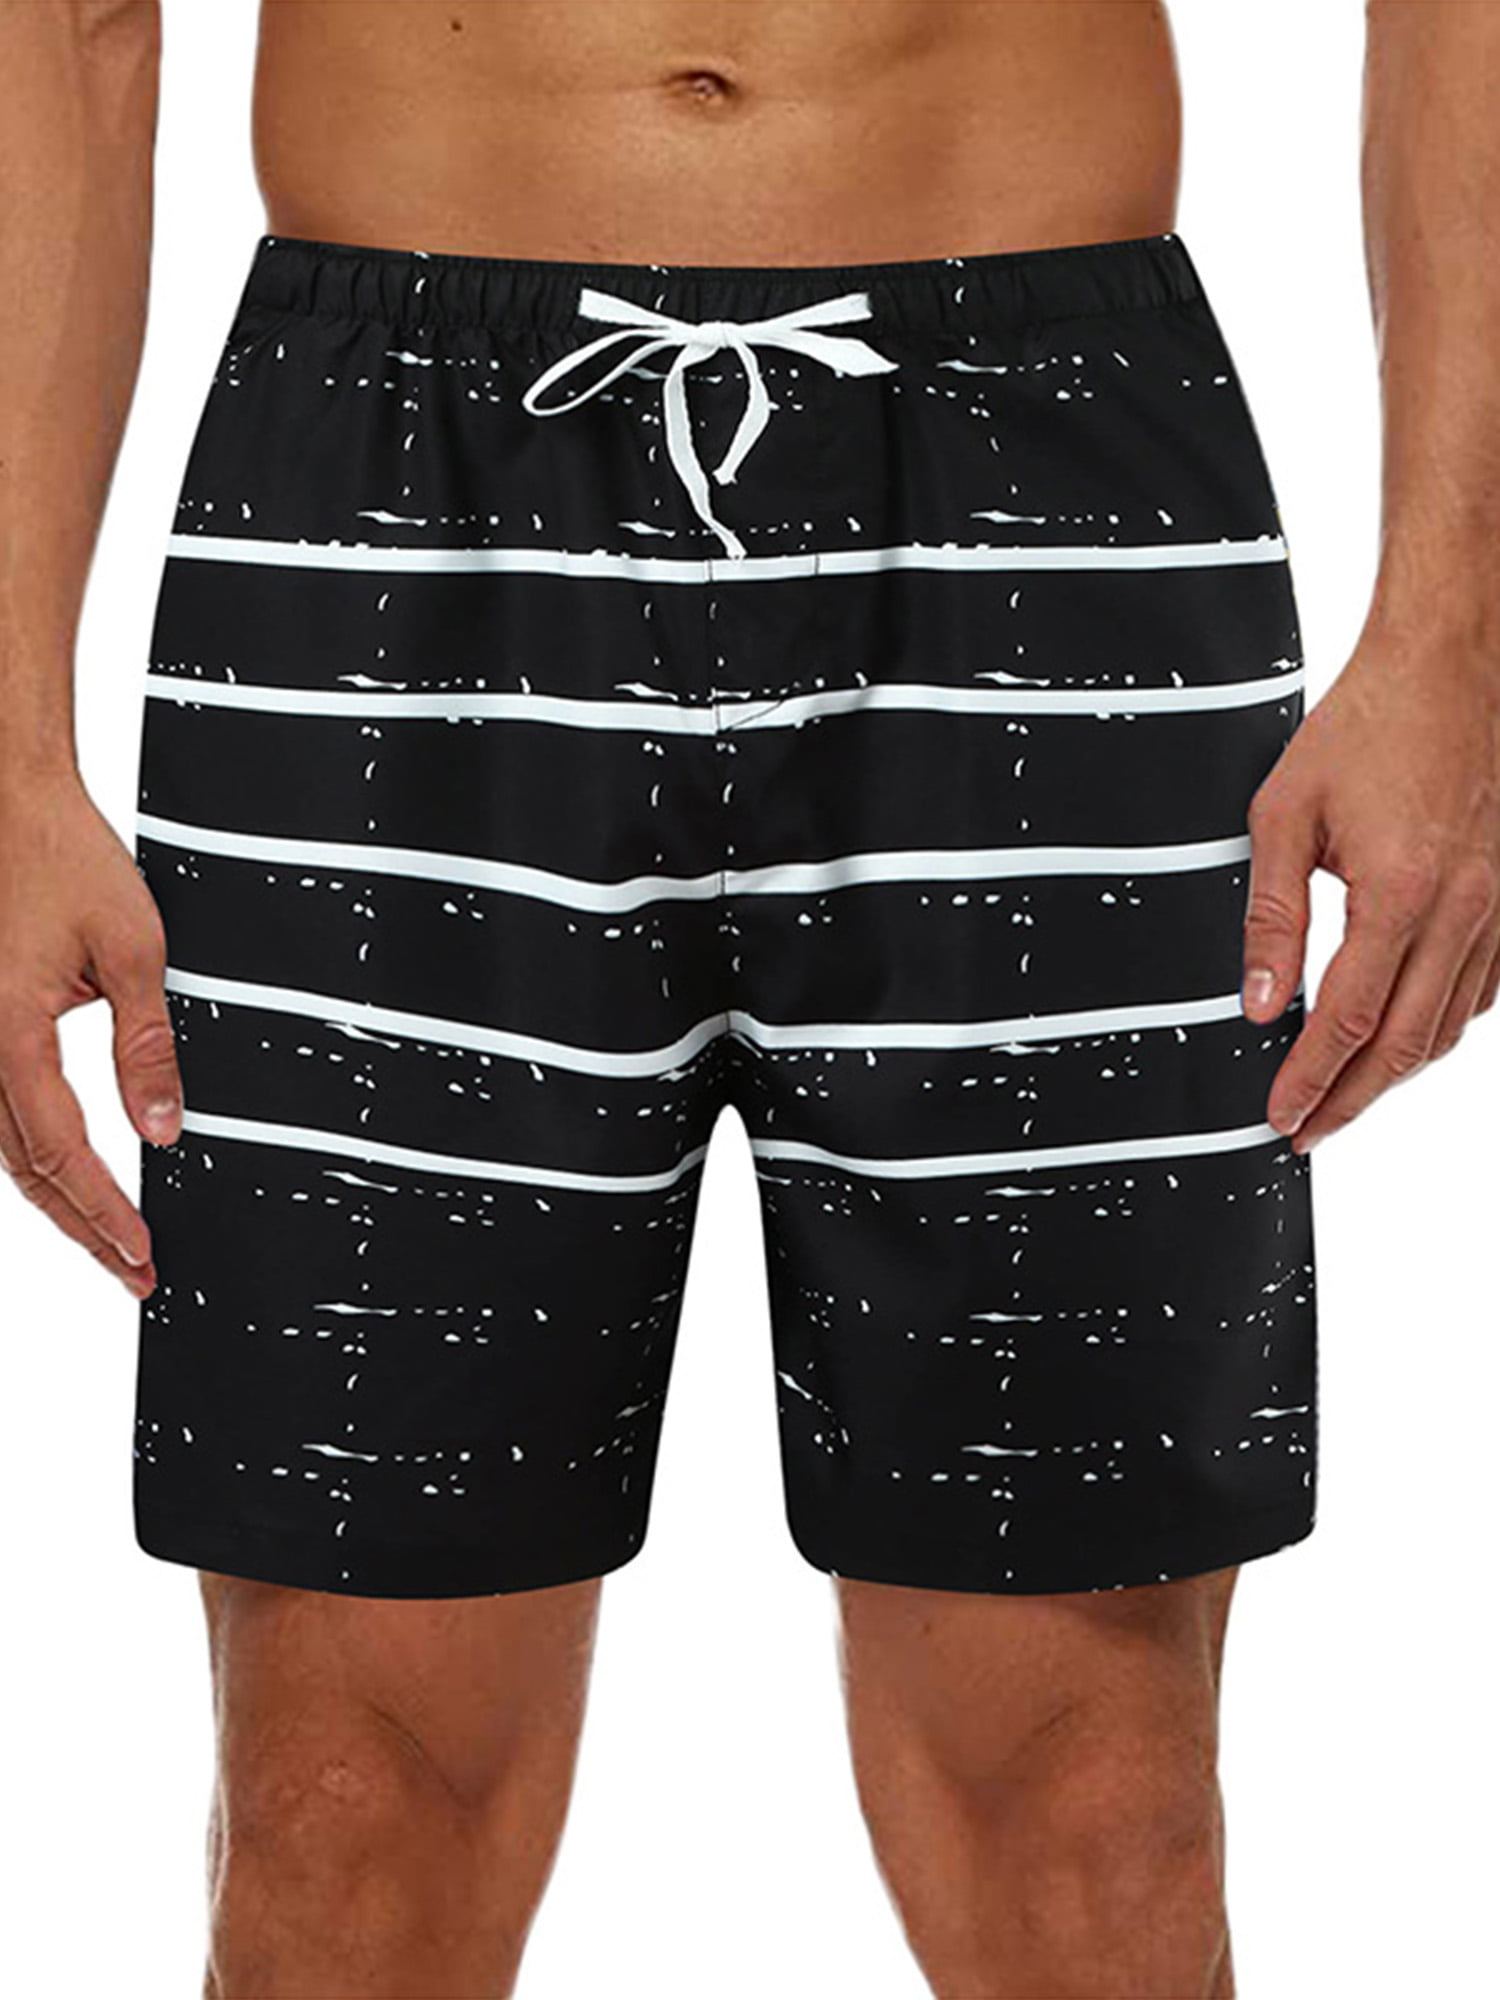 Summer Underwear Surf Beach Shorts Elastic Waist with Pocket Drawstring